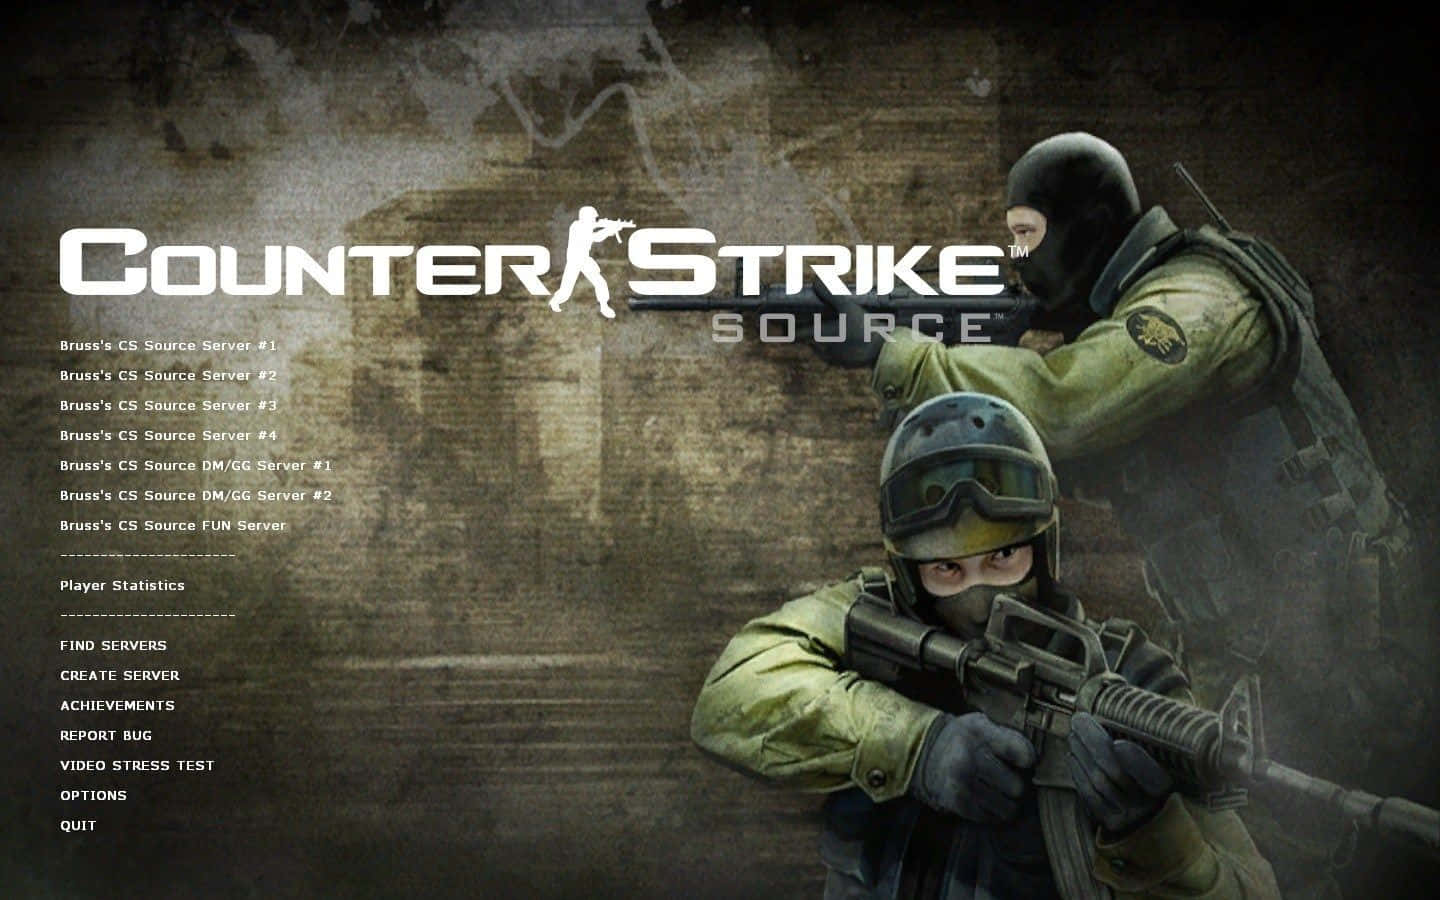 Counter Strike Source Lobby skærm grønne skytter Wallpaper